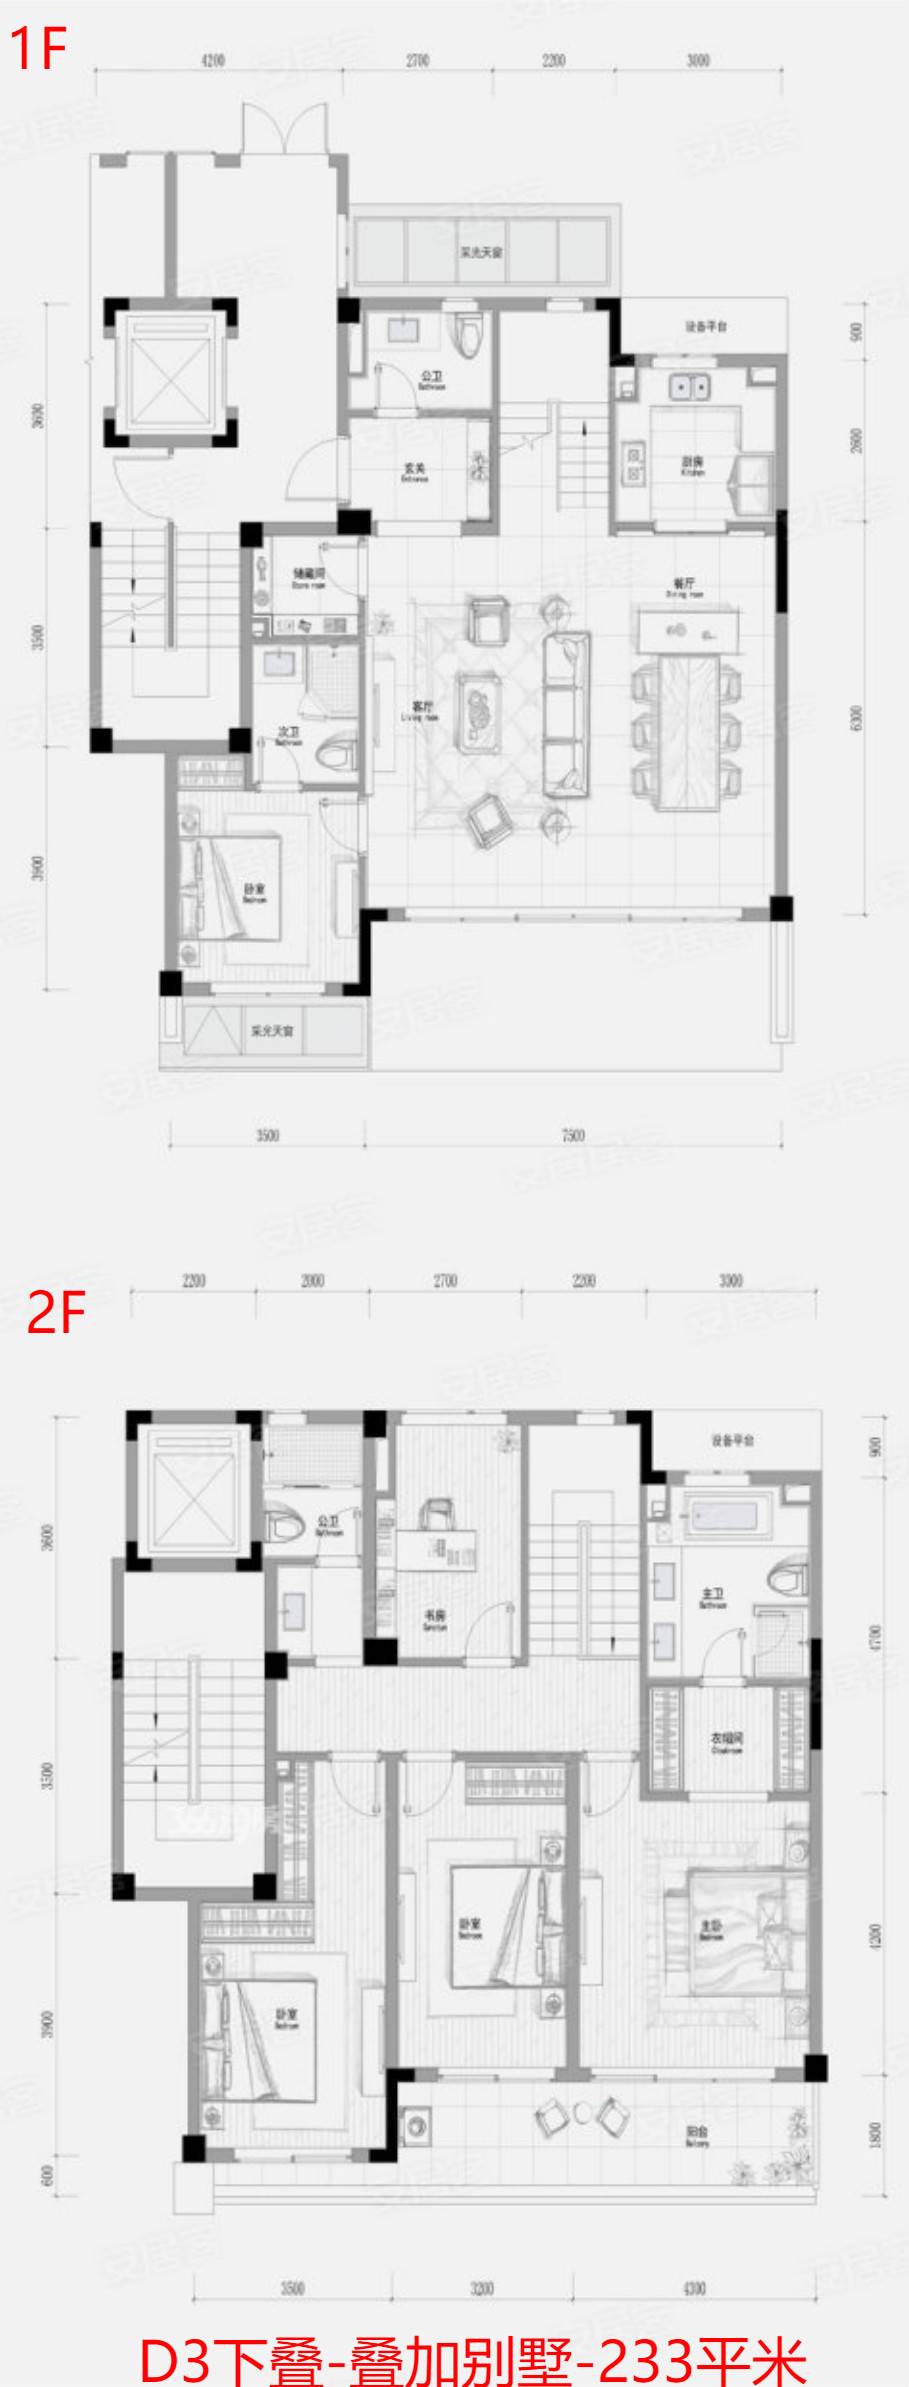 D3下叠-叠加别墅-233平米